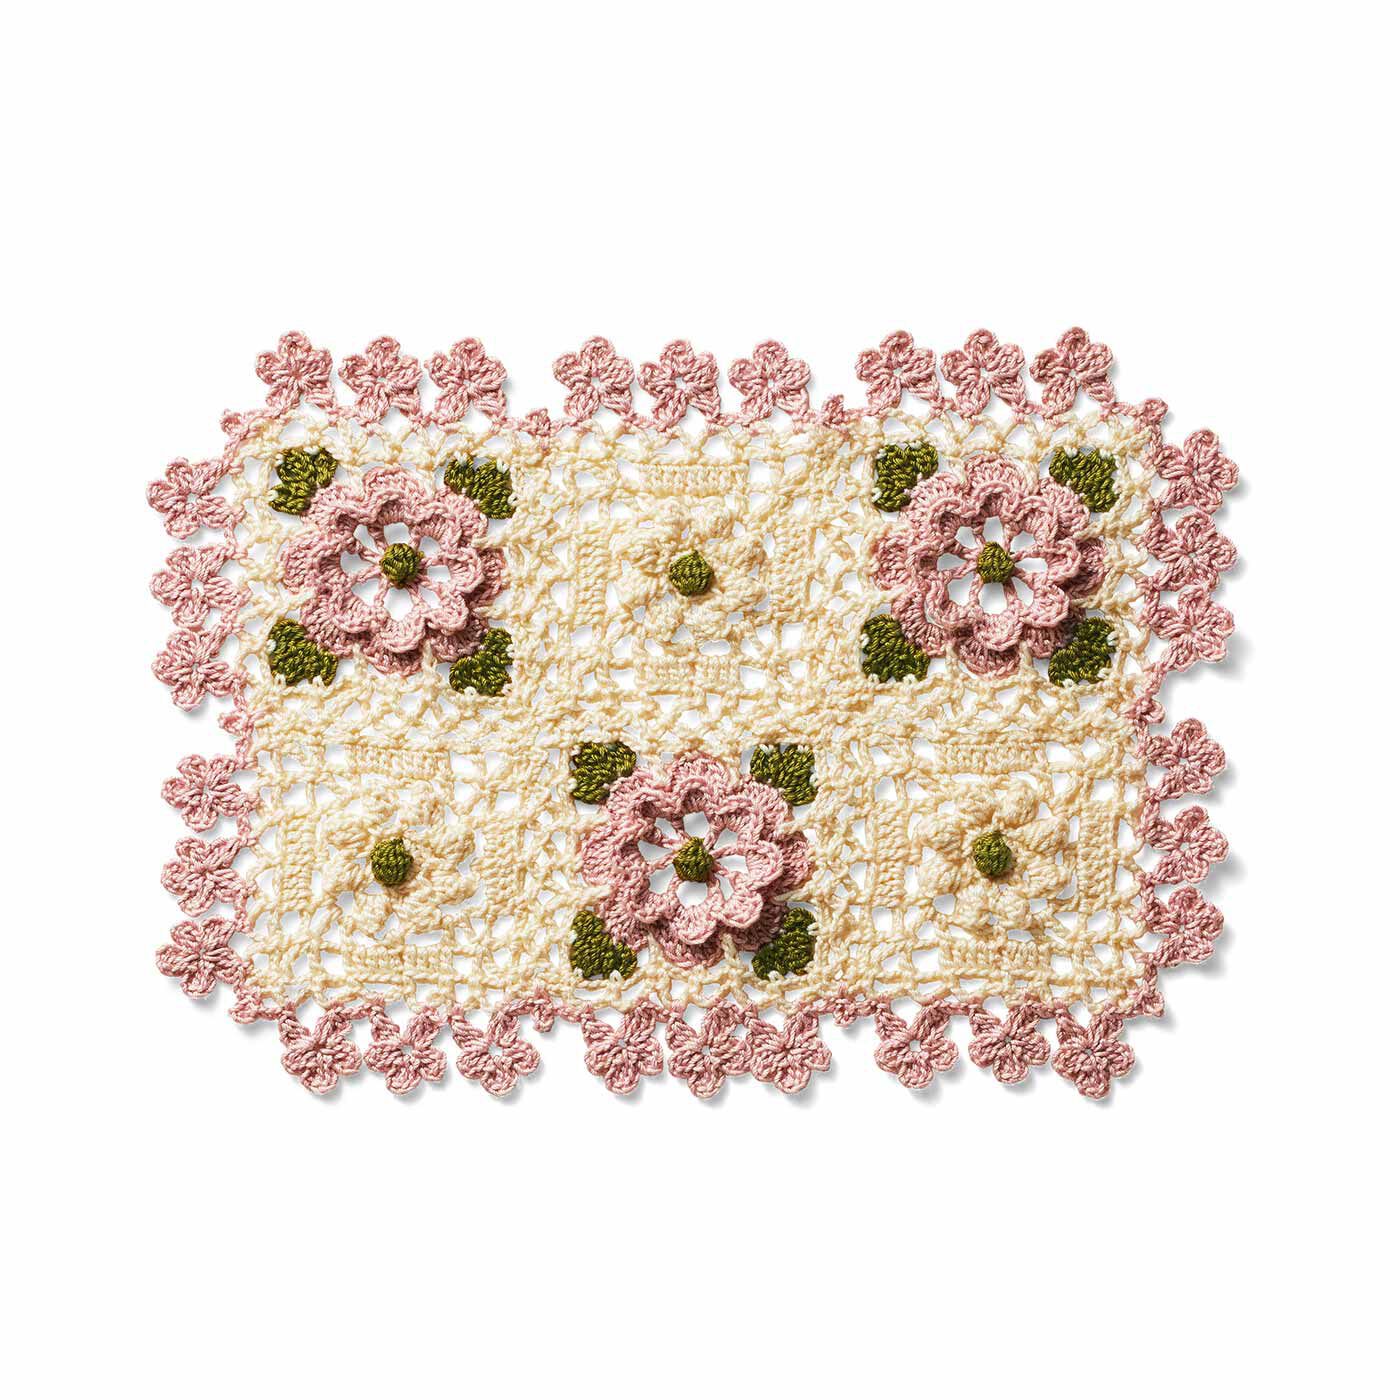 クチュリエ|レース編みで咲かせる愛らしい花々 立体お花ドイリーの会|オールドローズ